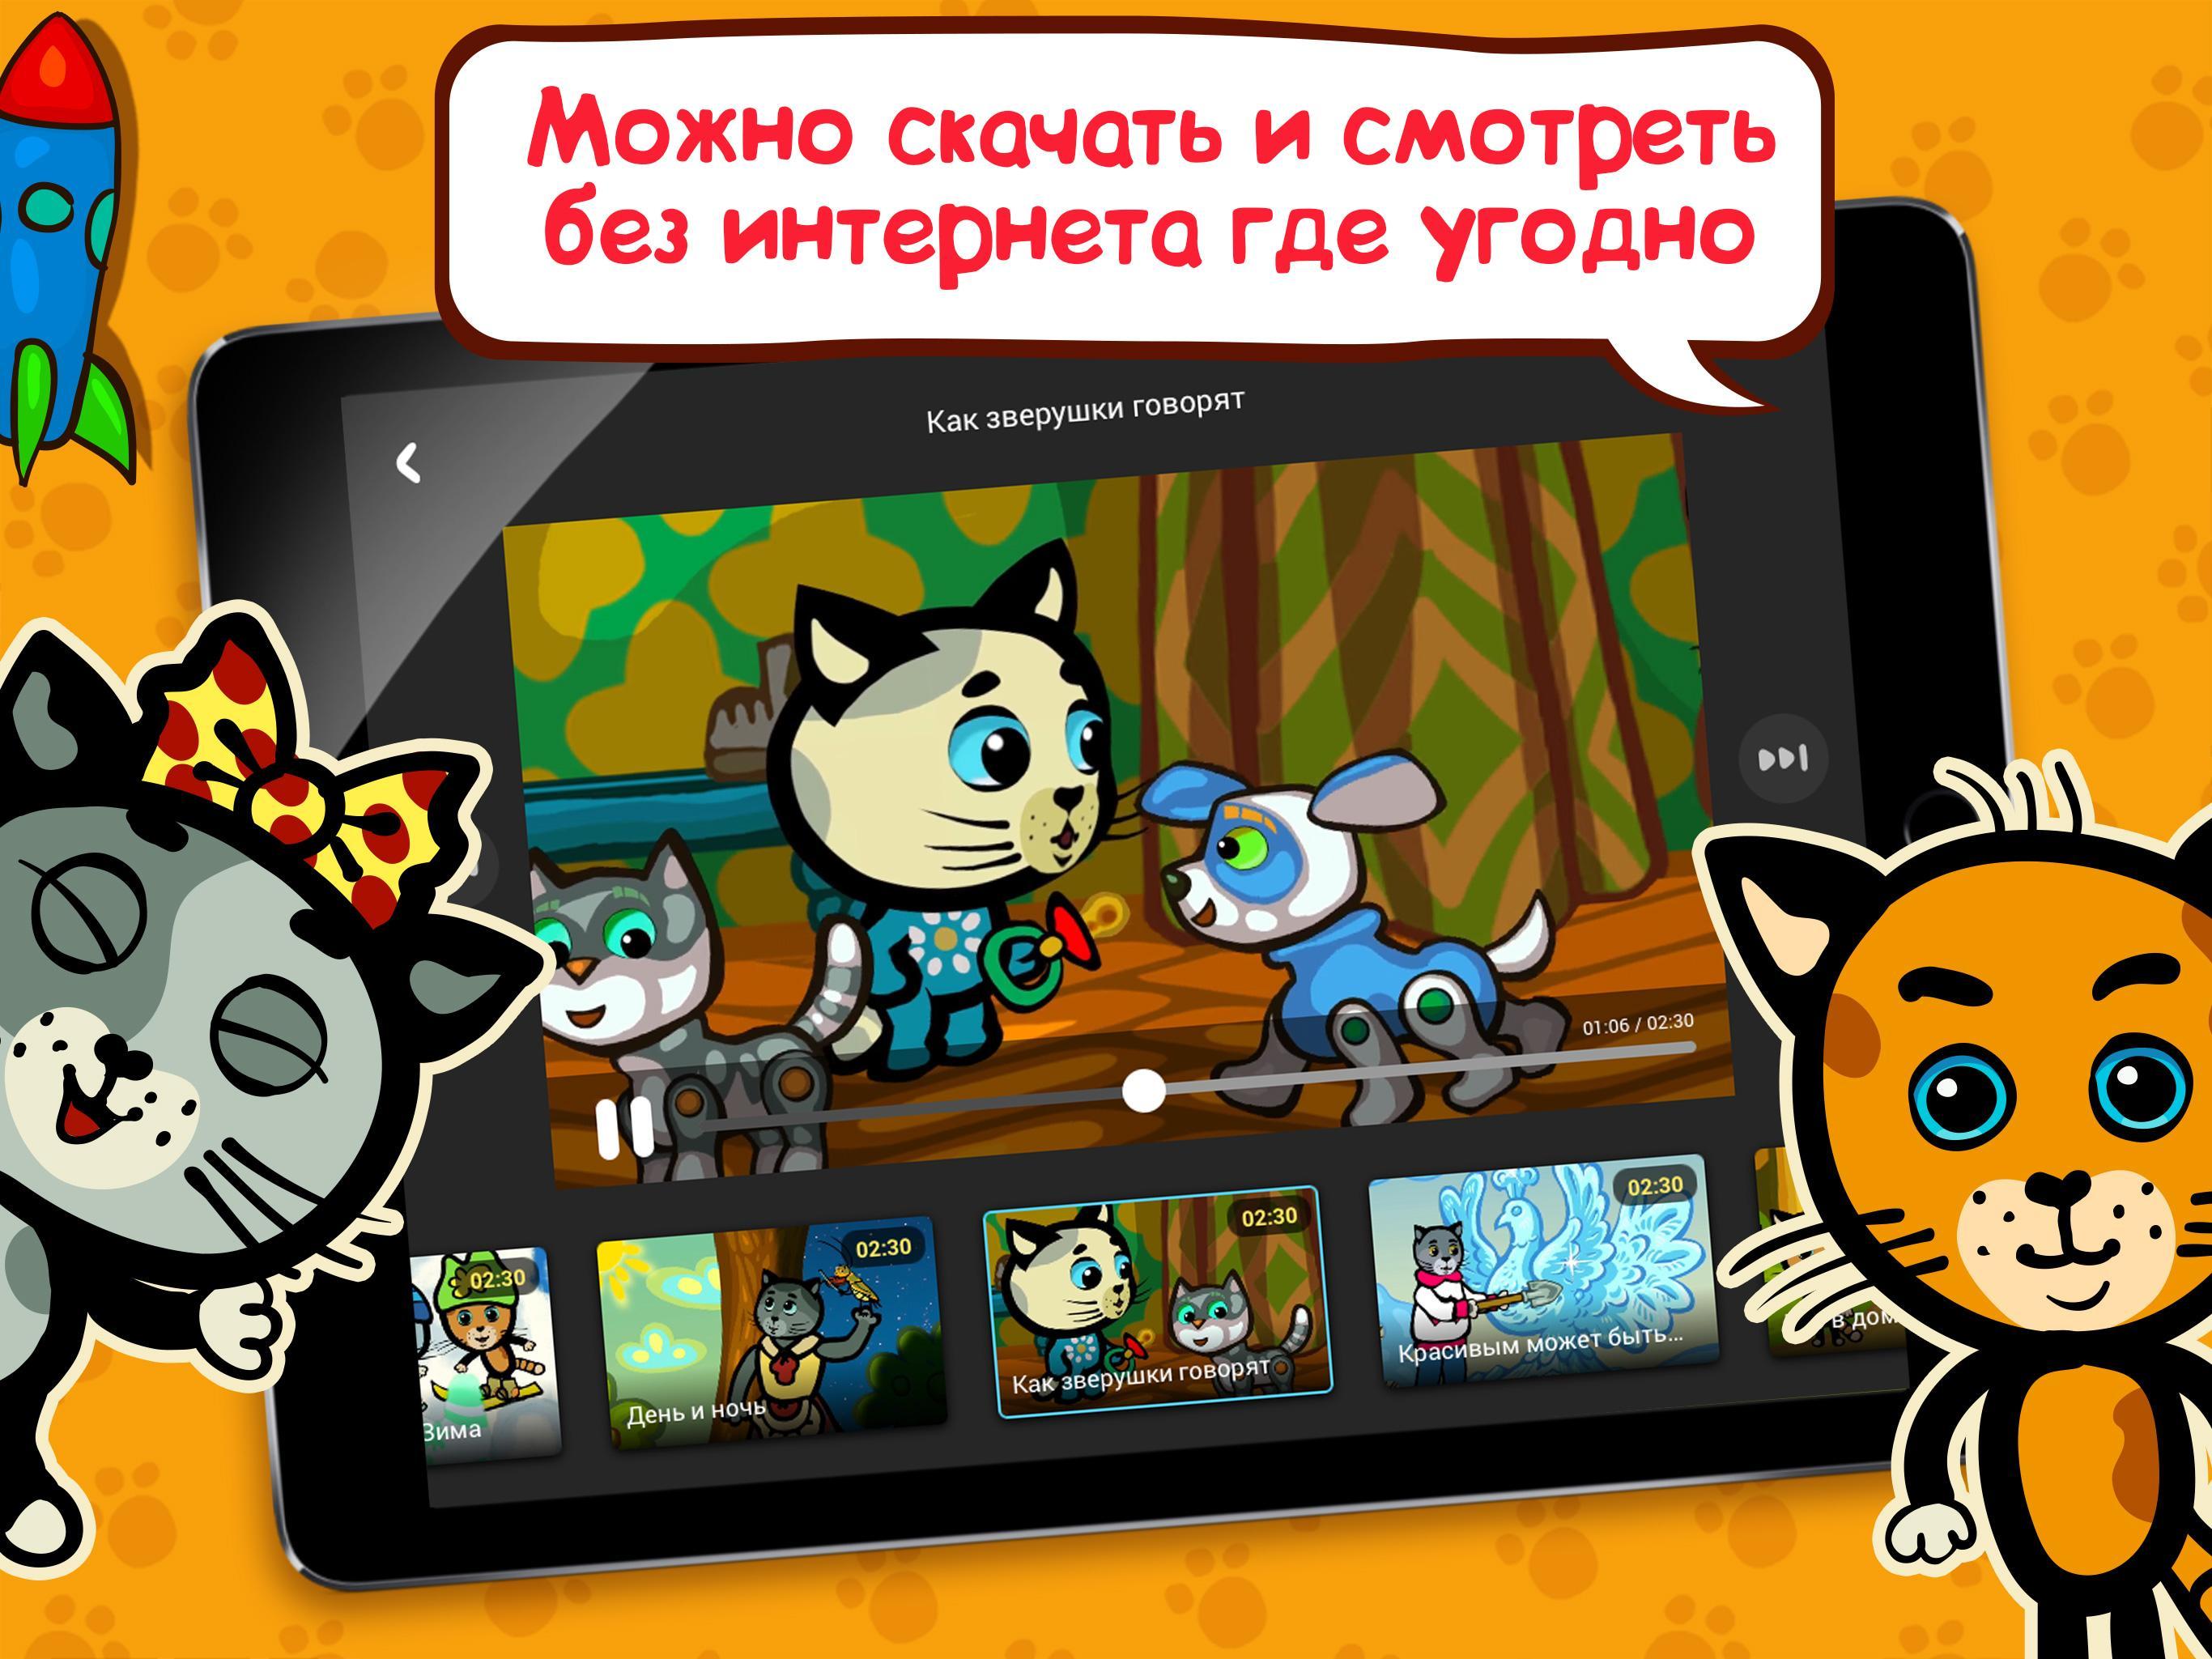 Три Котенка. Развивающие Мультики Для Детей For Android - APK Download